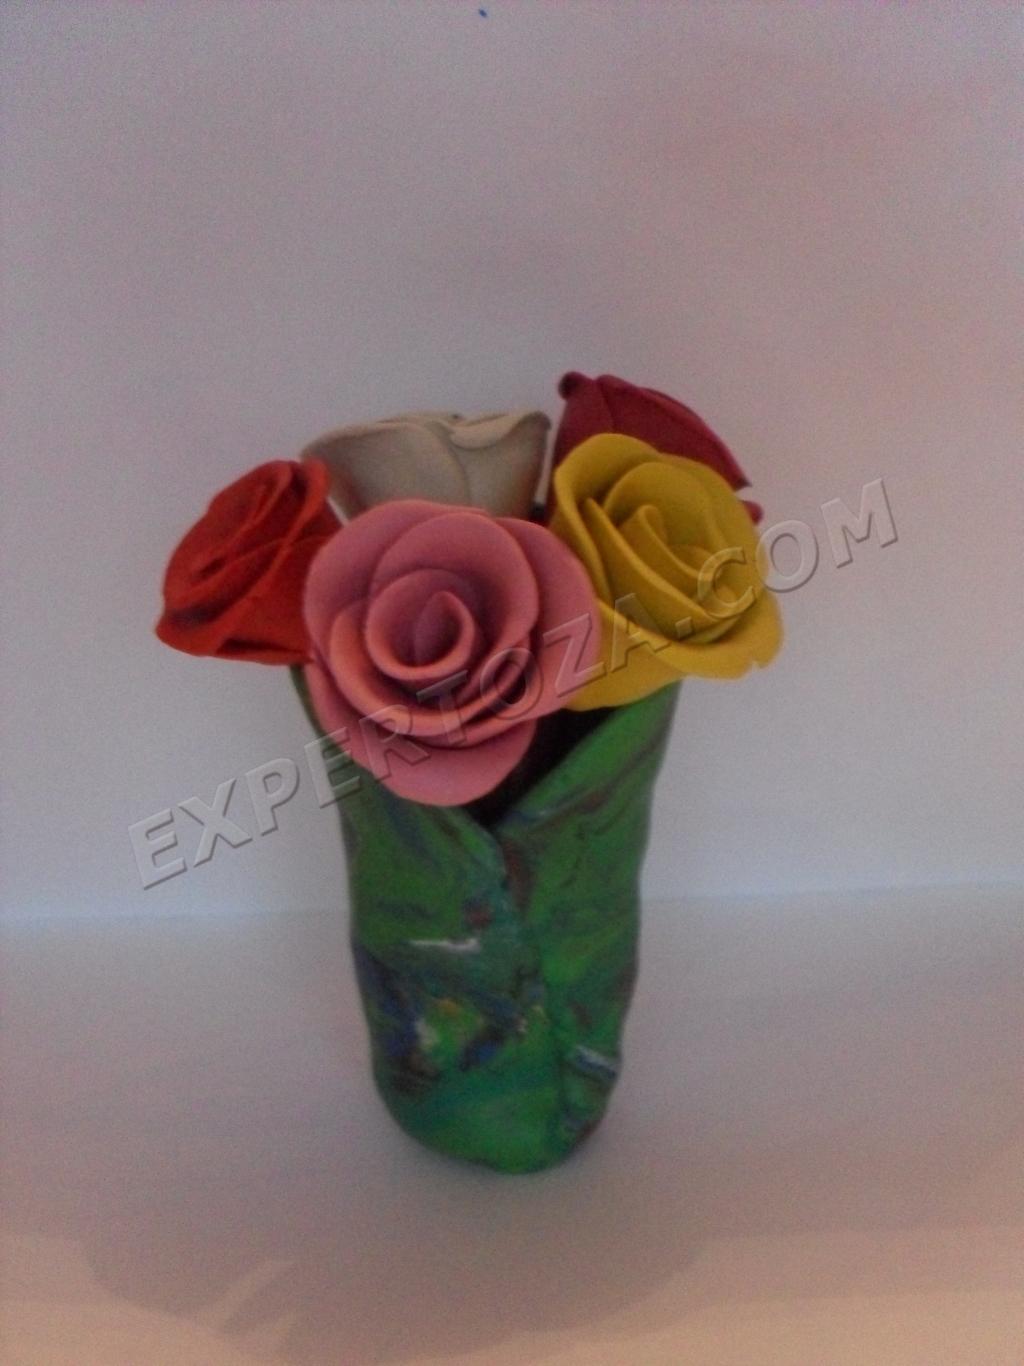 Как самостоятельно сделать красивую вазу из пластилина для взрослых и детей?